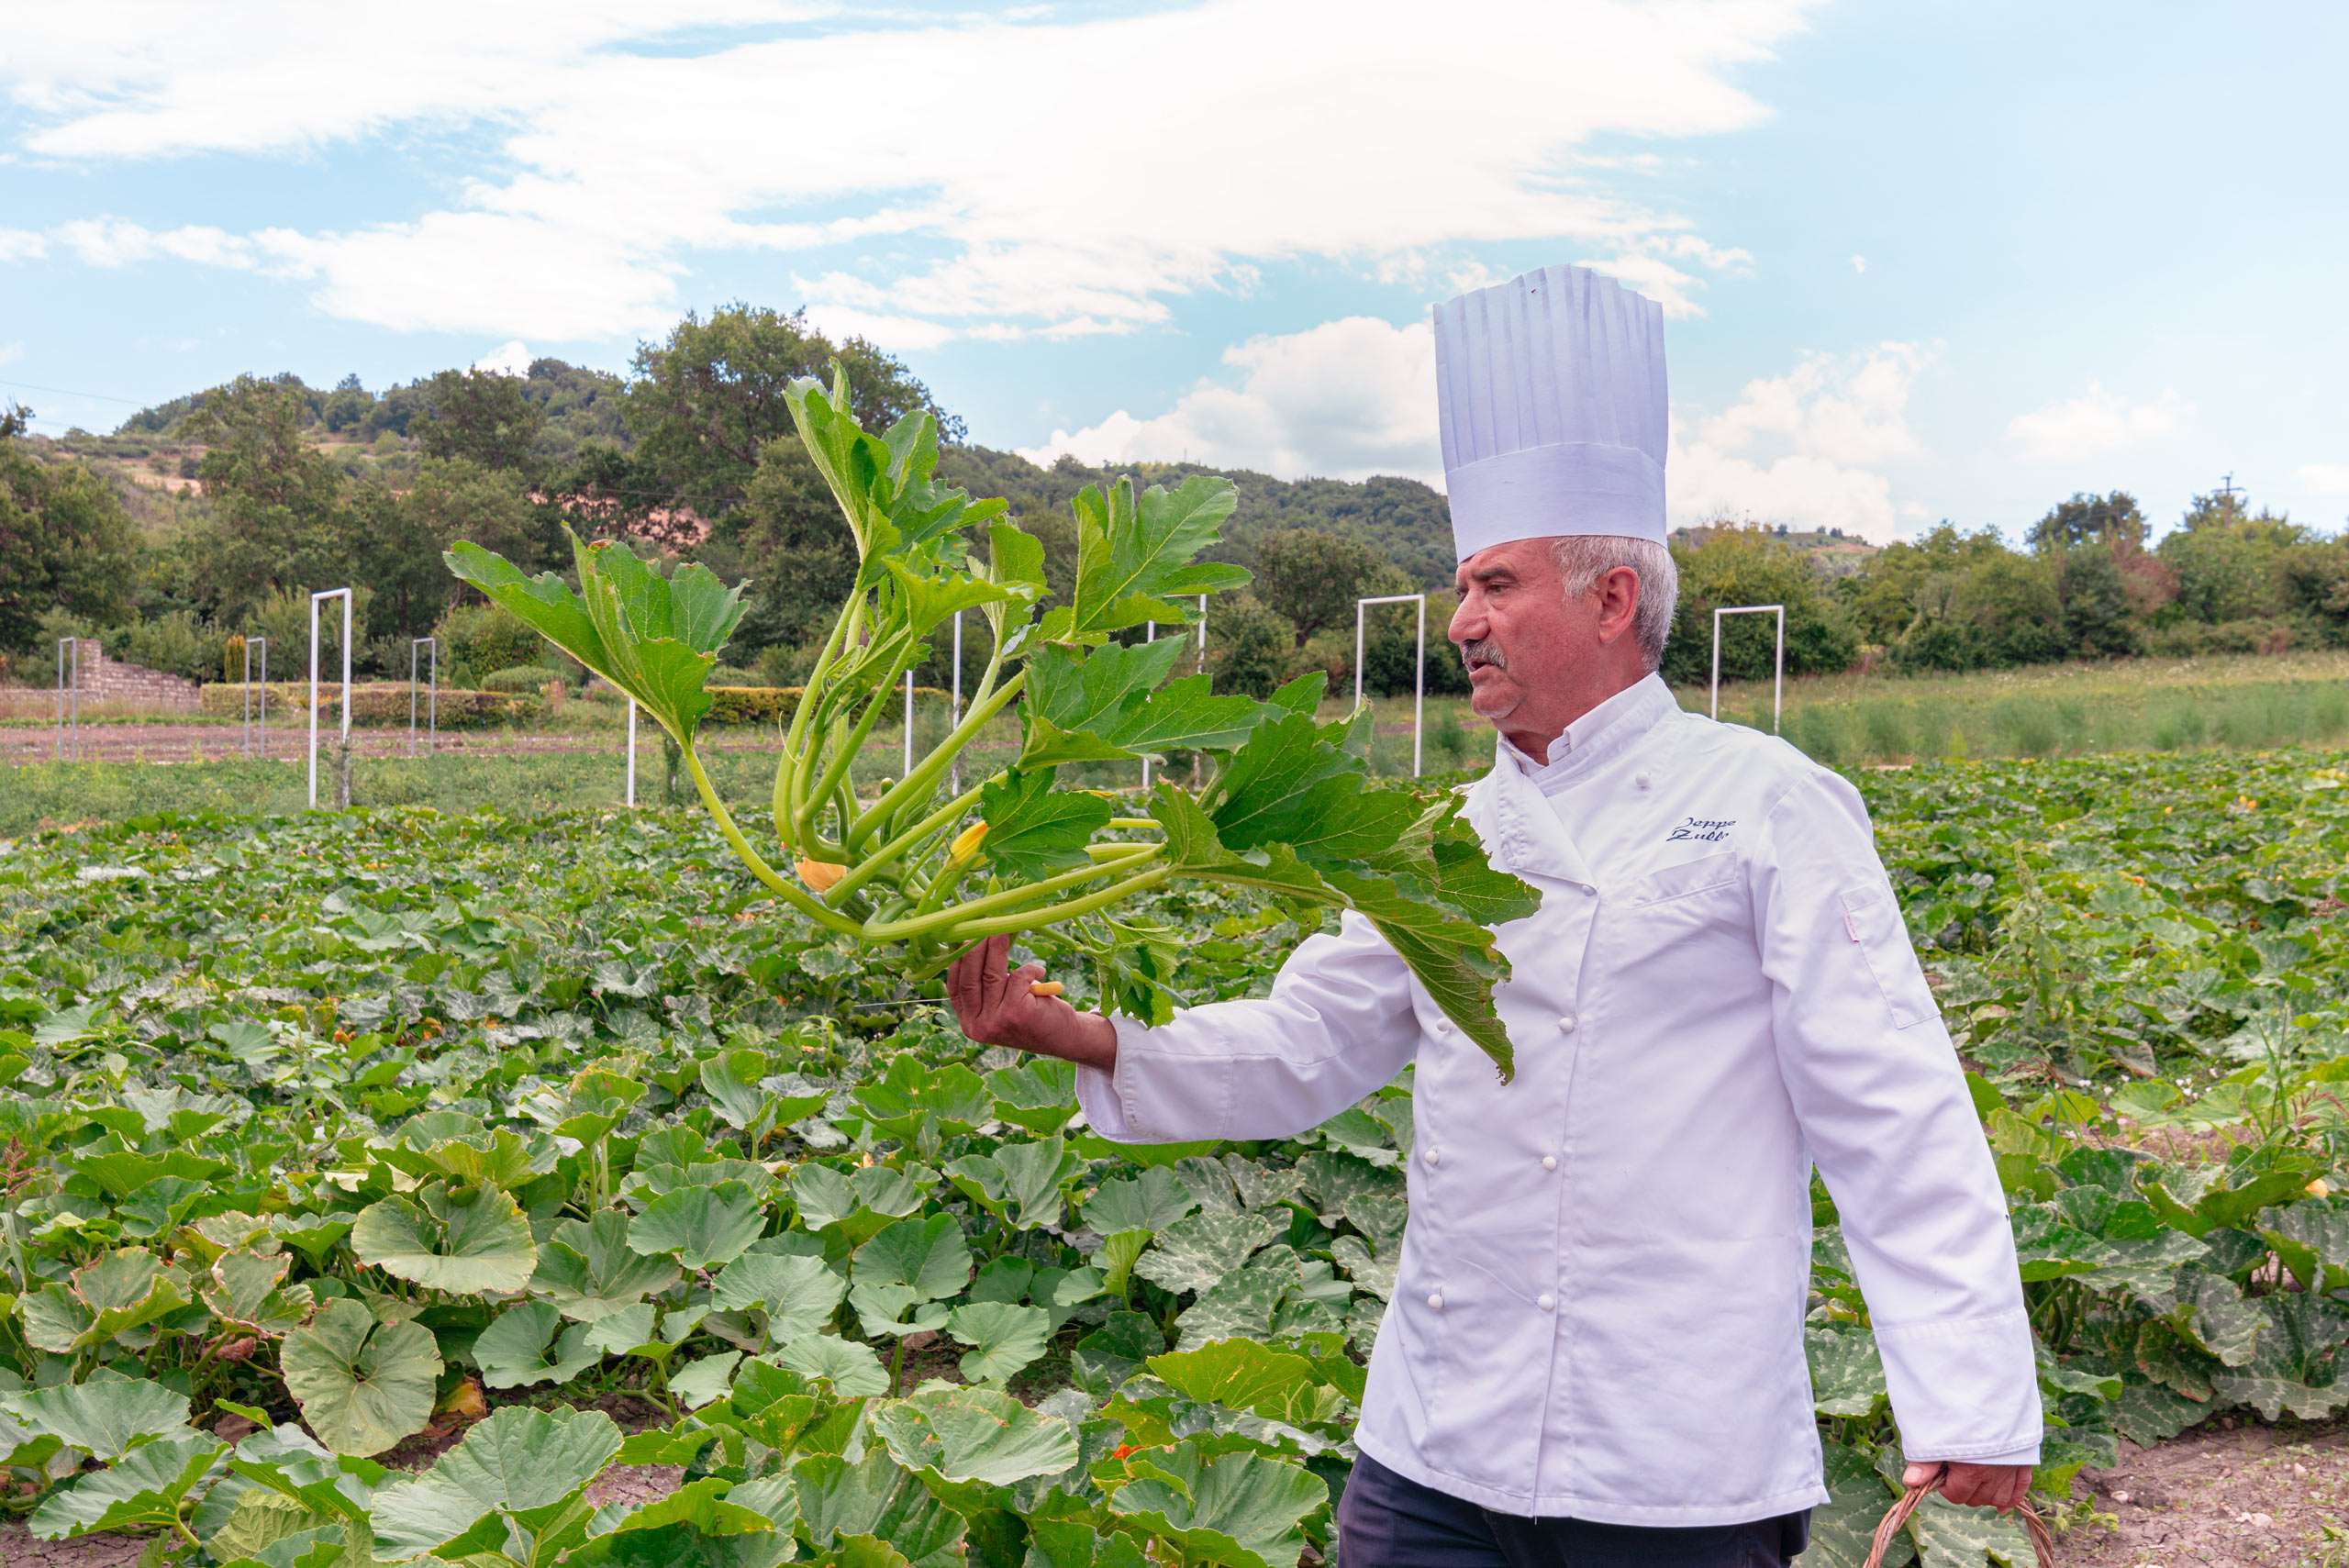 Peppe zullo's vegetable garden in Orsara di Puglia